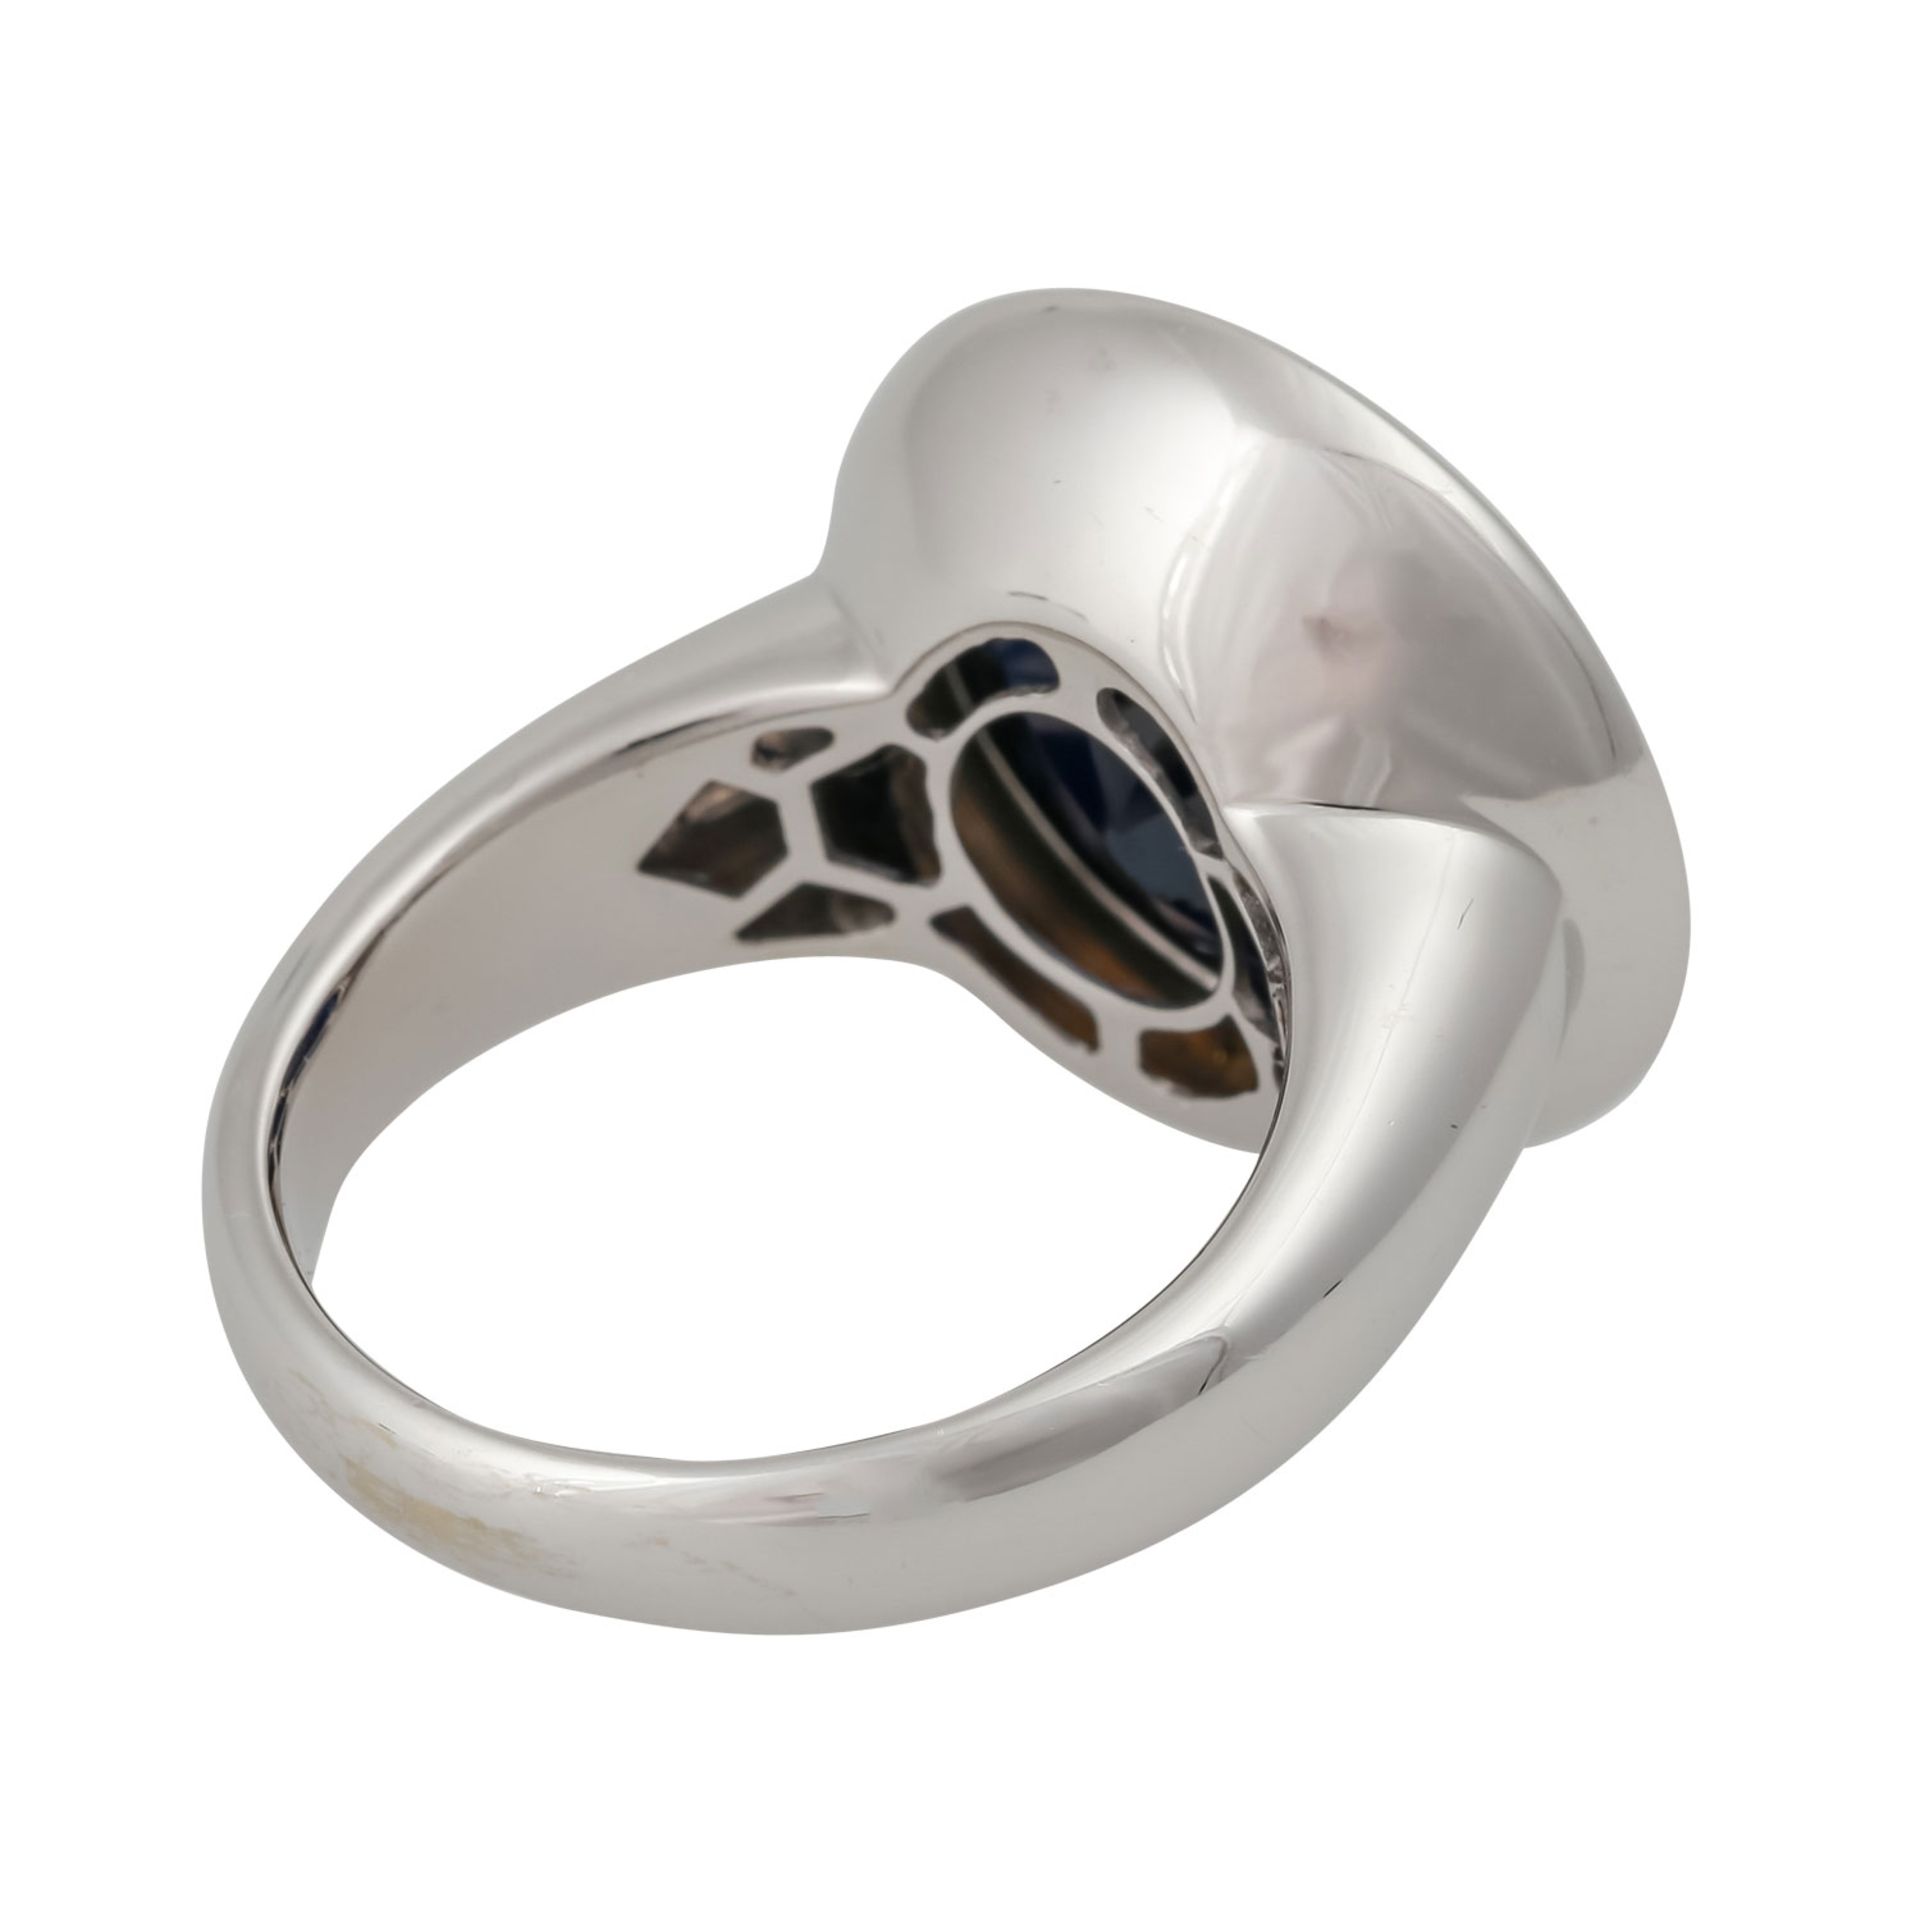 Ring mit dunkelblauem Saphir von 11,8 ct, rund facettiert, D: ca. 15 mm, WBW: 2.500 €, WG 18K, 11,7 - Bild 3 aus 5